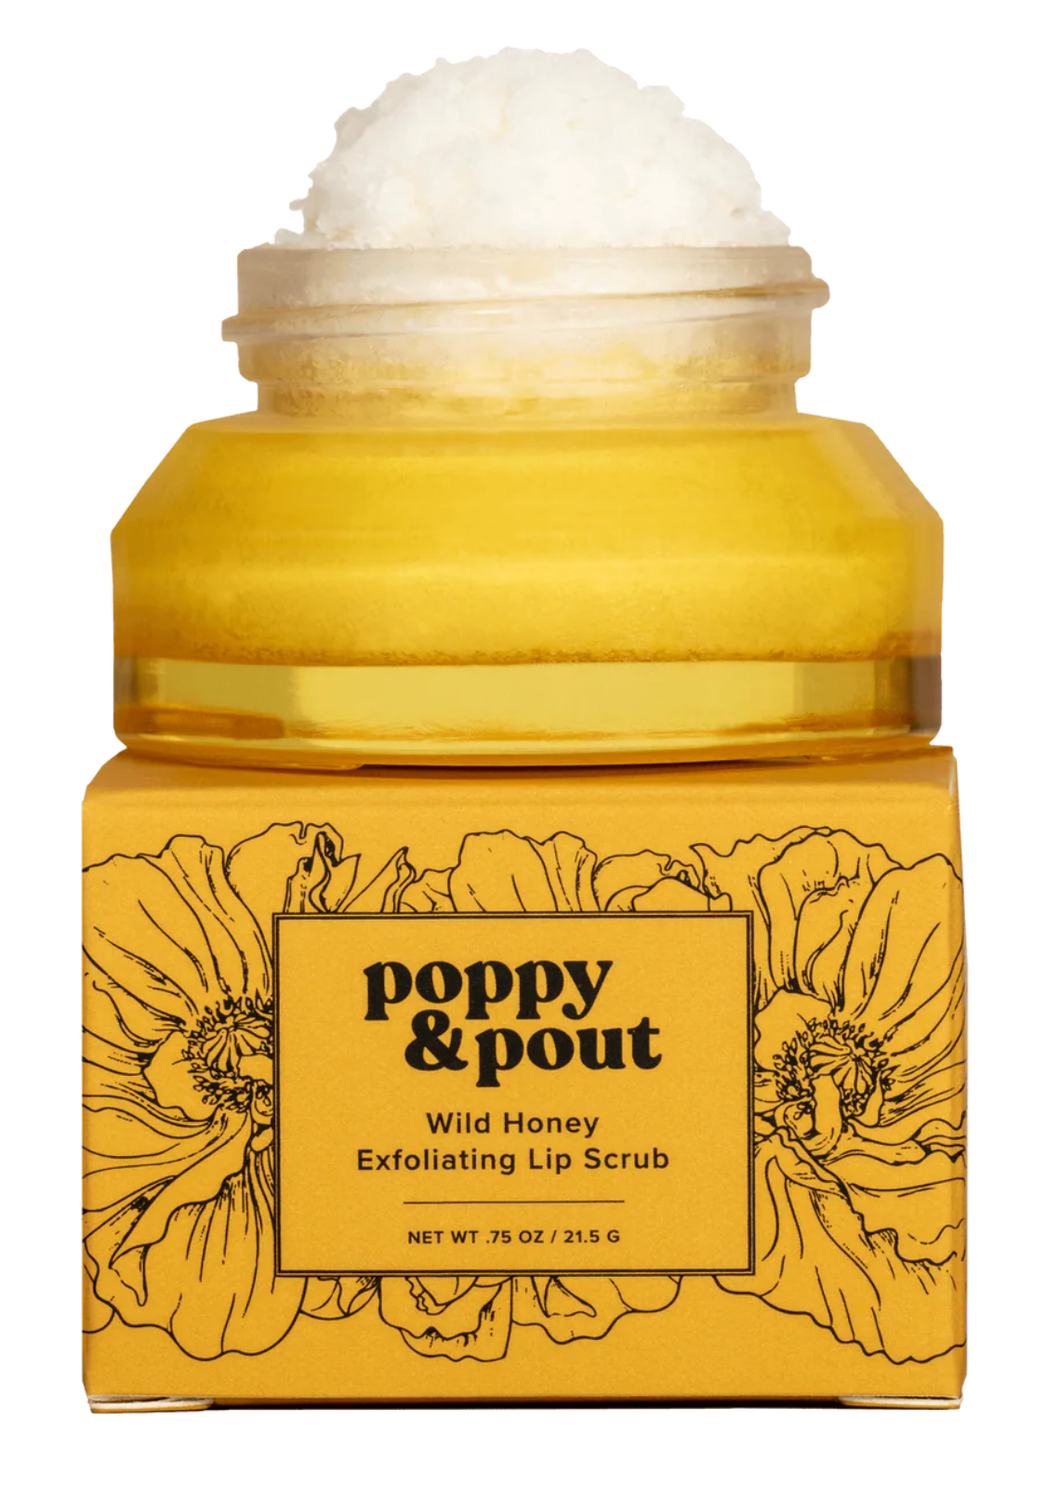 Poppy & Pout Lip Scrub, Wild Honey